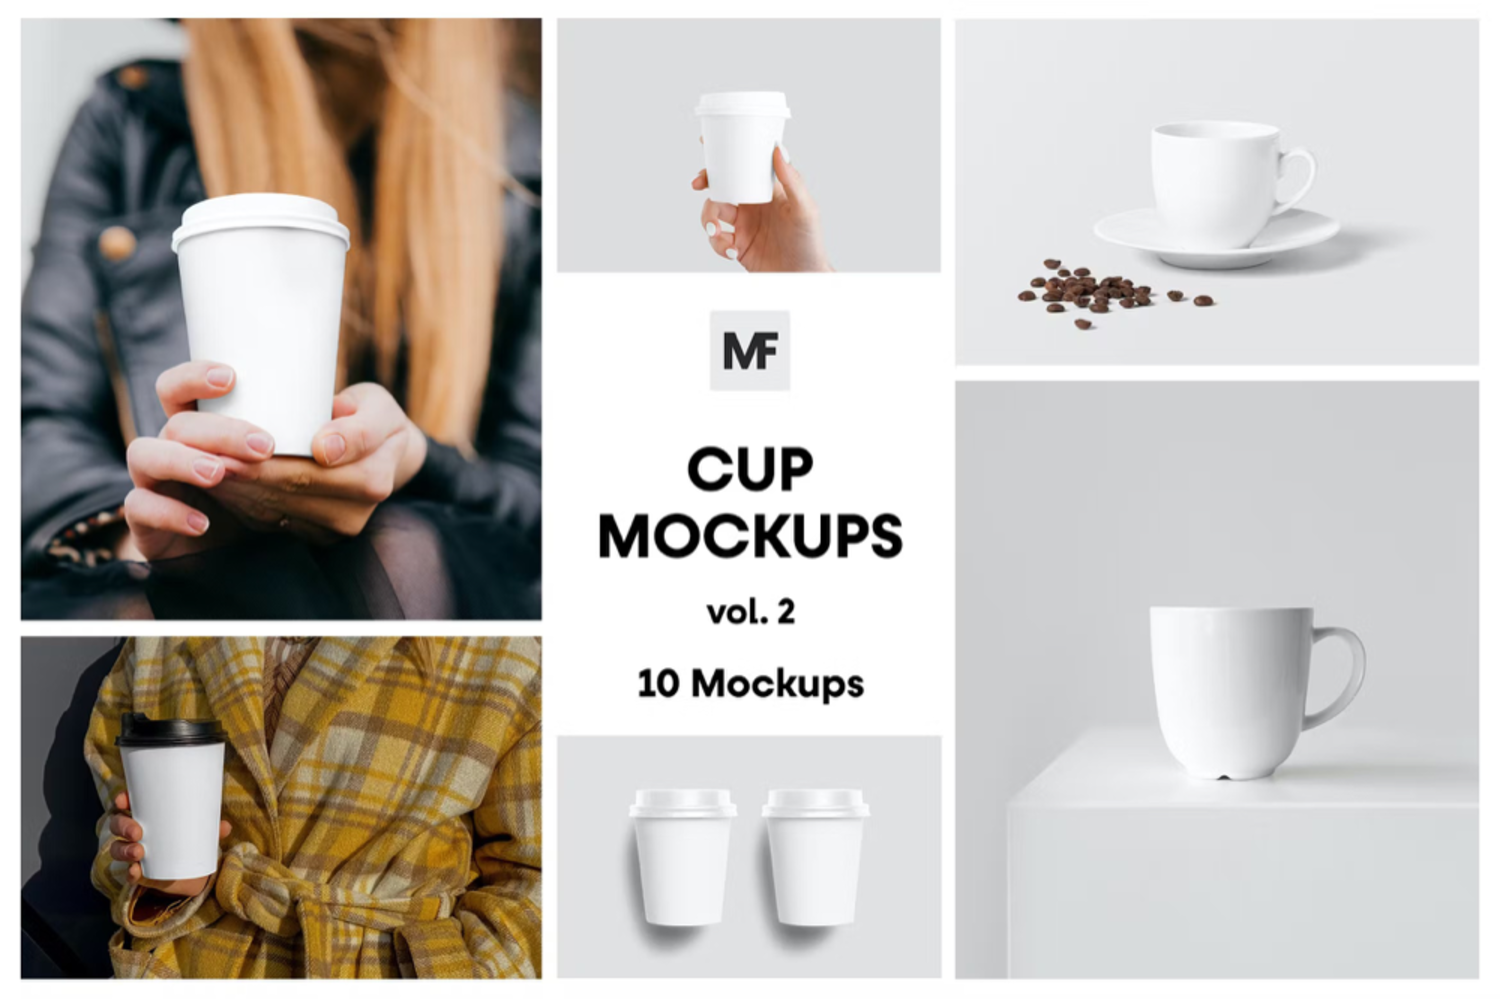 5027 10款手持一次性咖啡杯陶瓷马克杯模型杯身logo标识设计贴图ps包装样机素材 Cup Mockups – Packaging Mockups vol.2@GOOODME.COM